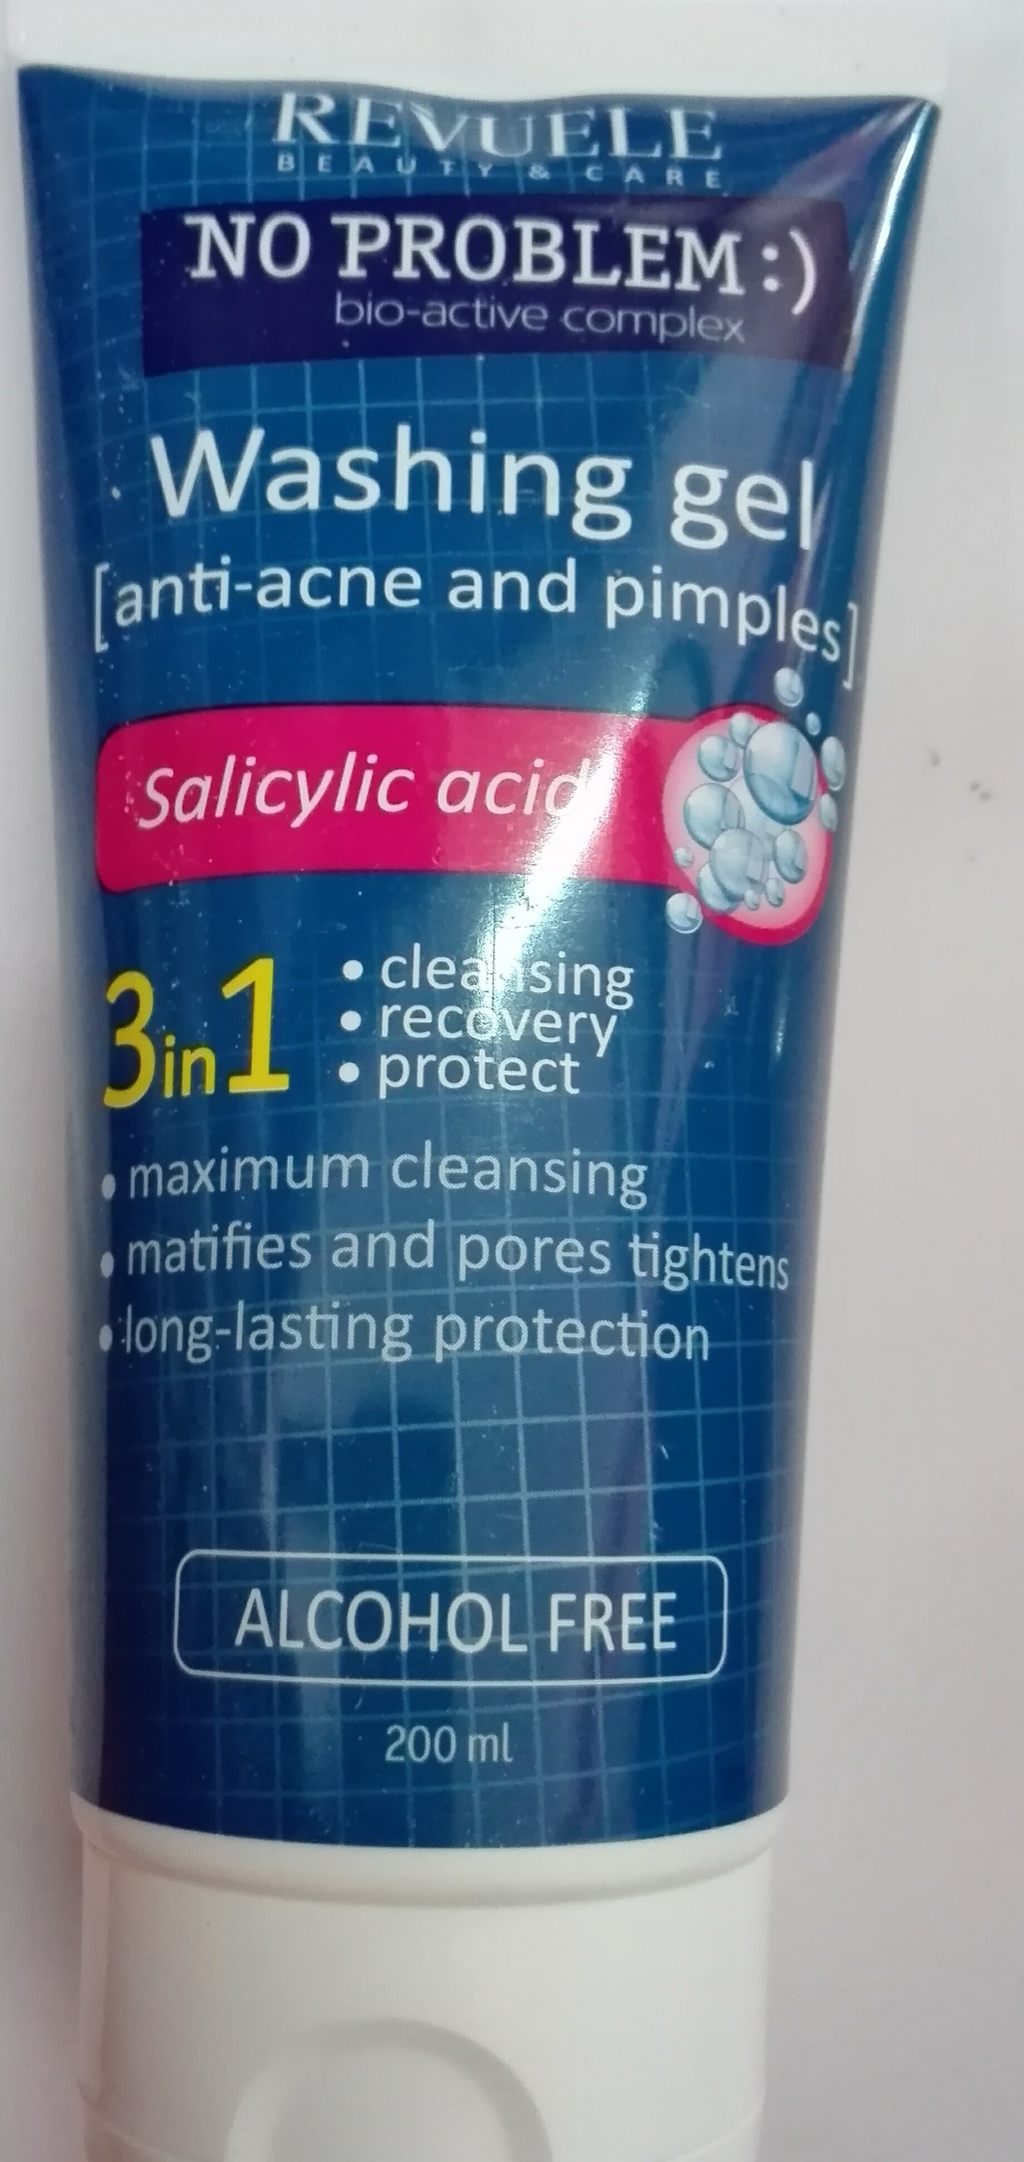 revuelle-gel de limpeza 3 in1 com acido salicilico no problem